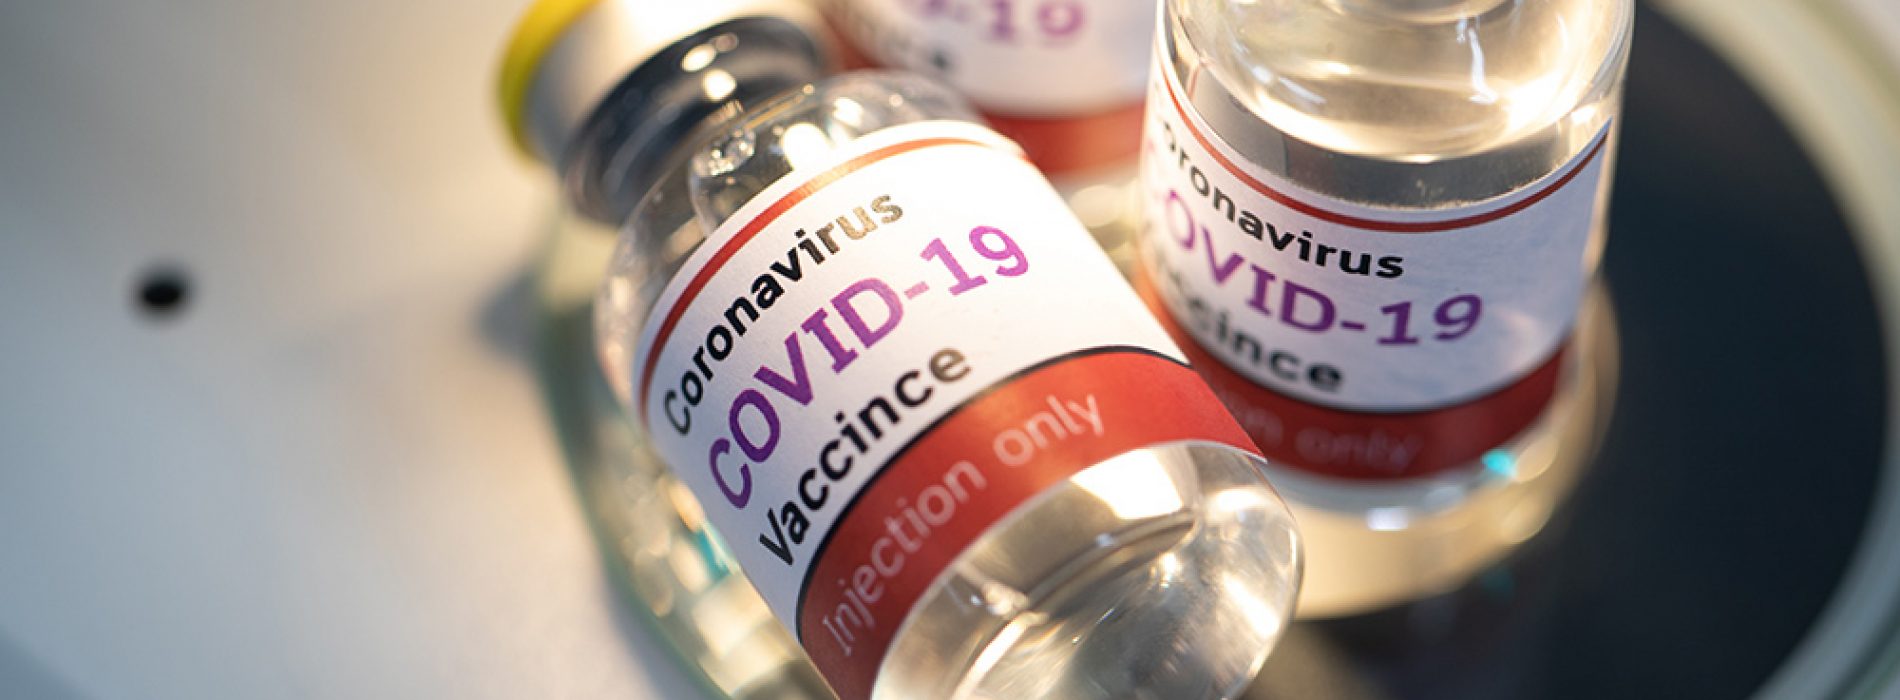 Covid-19-injecties verspreiden nieuwe “varianten” van coronavirus